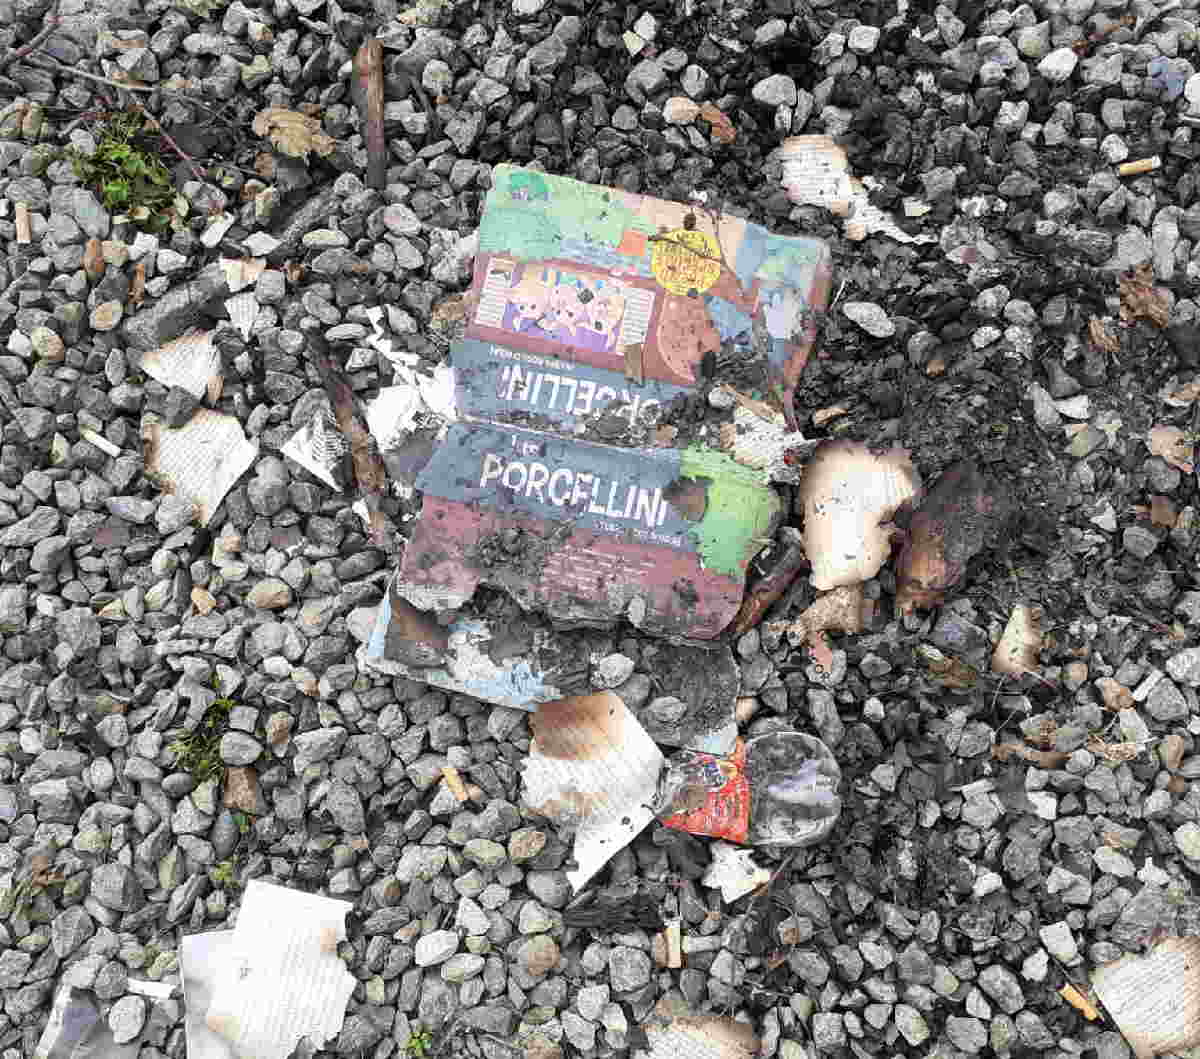 CHIAVERANO – Atti vandalici: in ultimo libri bruciati (FOTO)